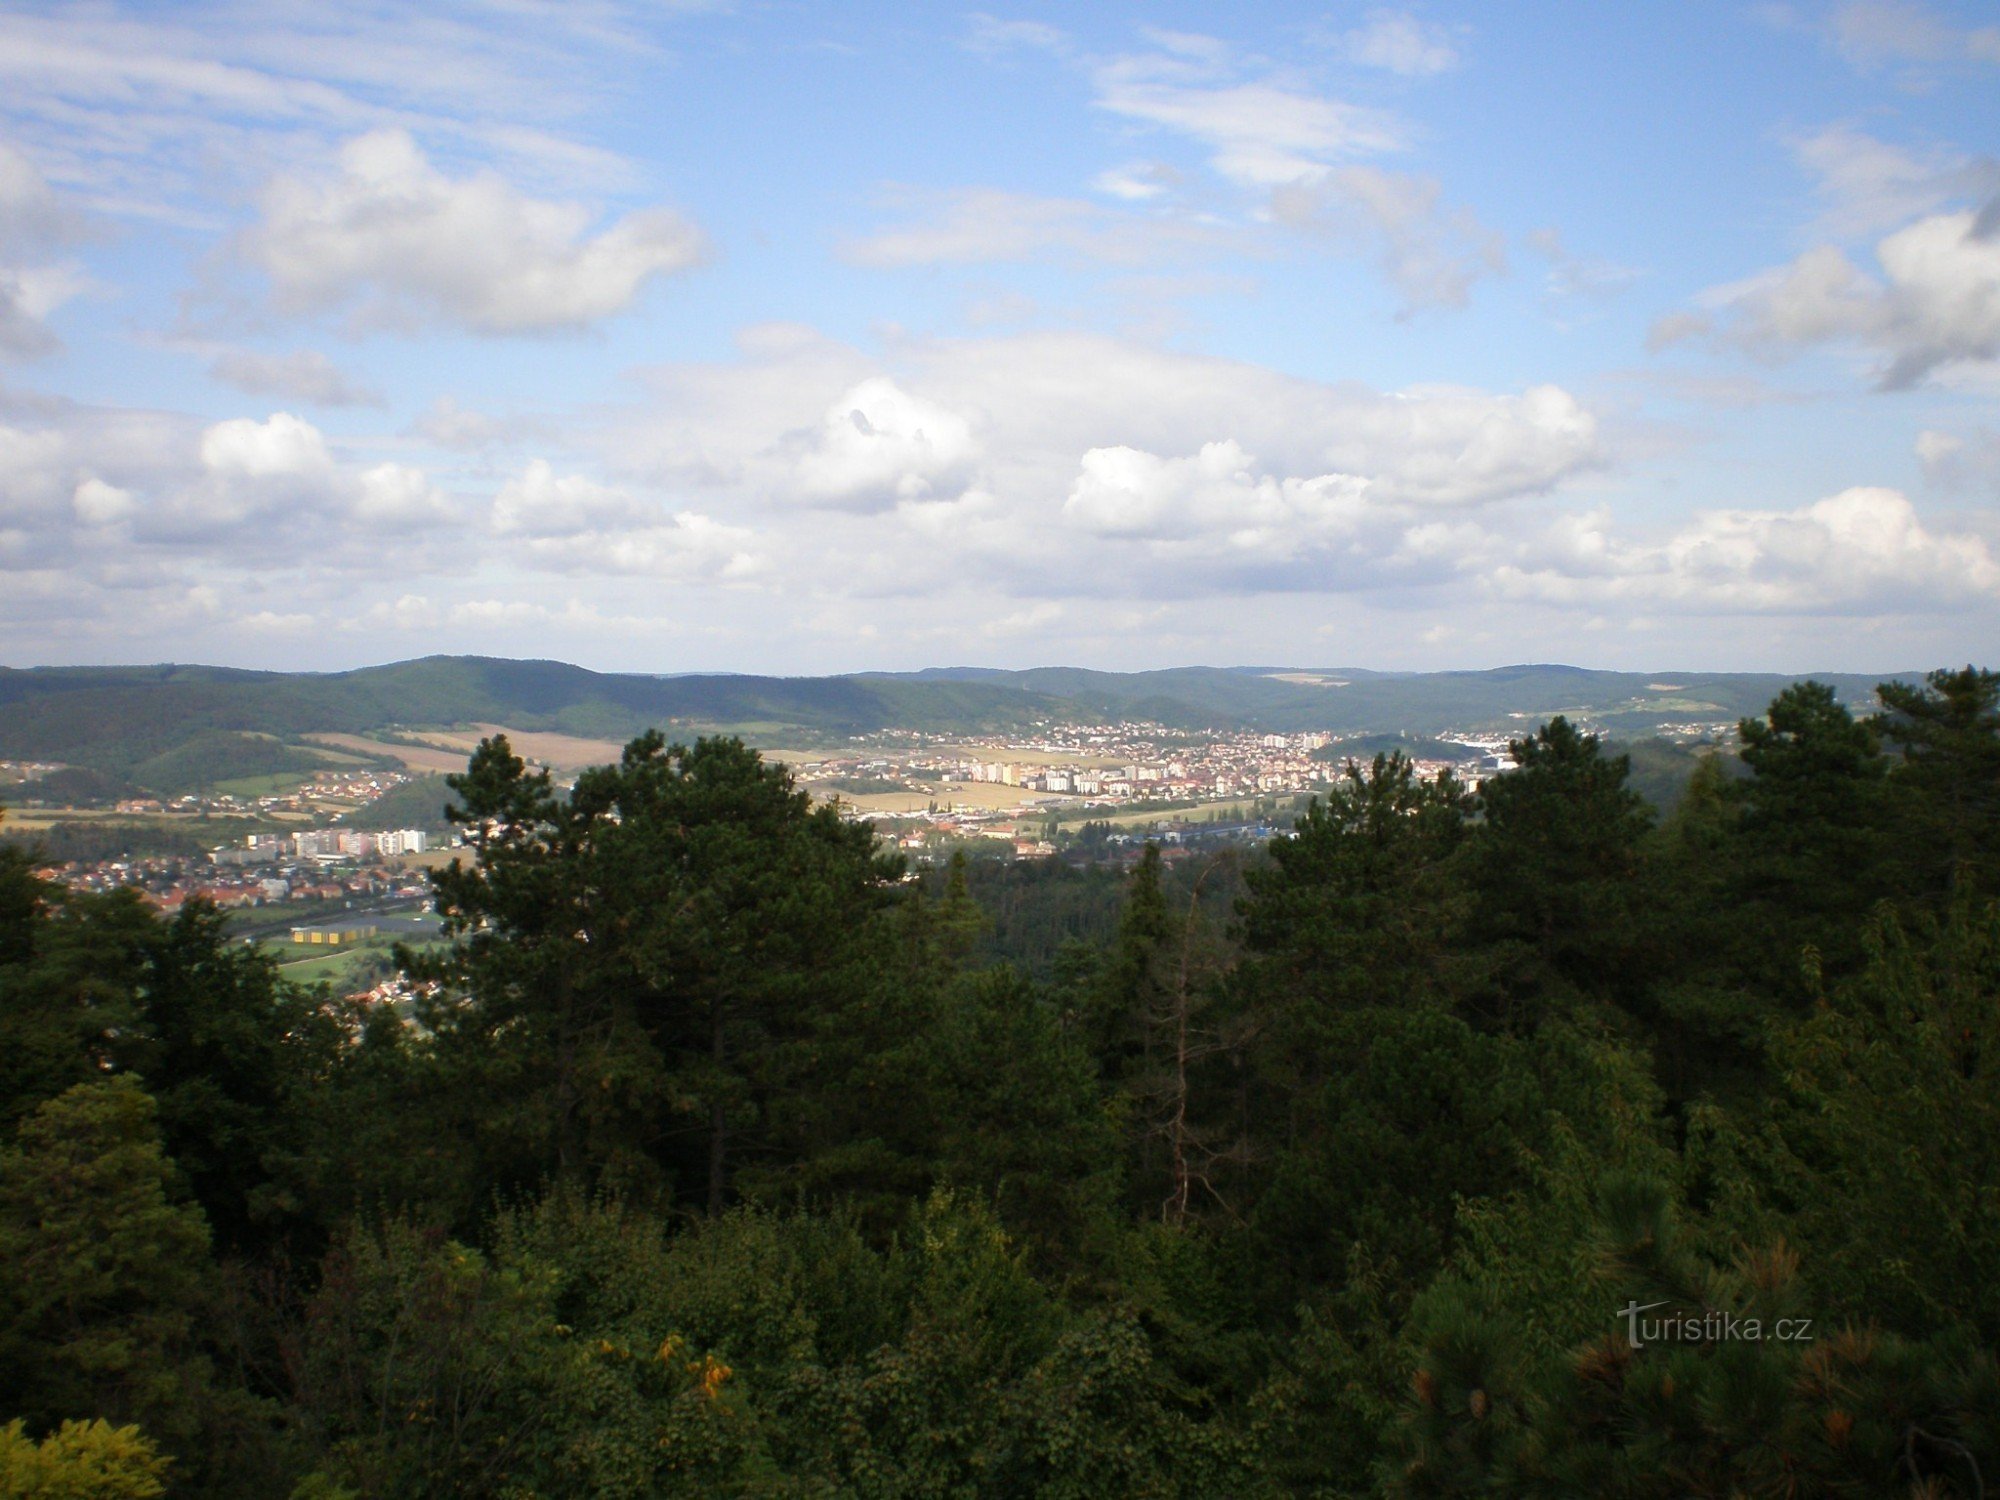 Θέα από το βουνό Koukola προς τα Β (κατεύθυνση Beroun και Králův Dvůr)